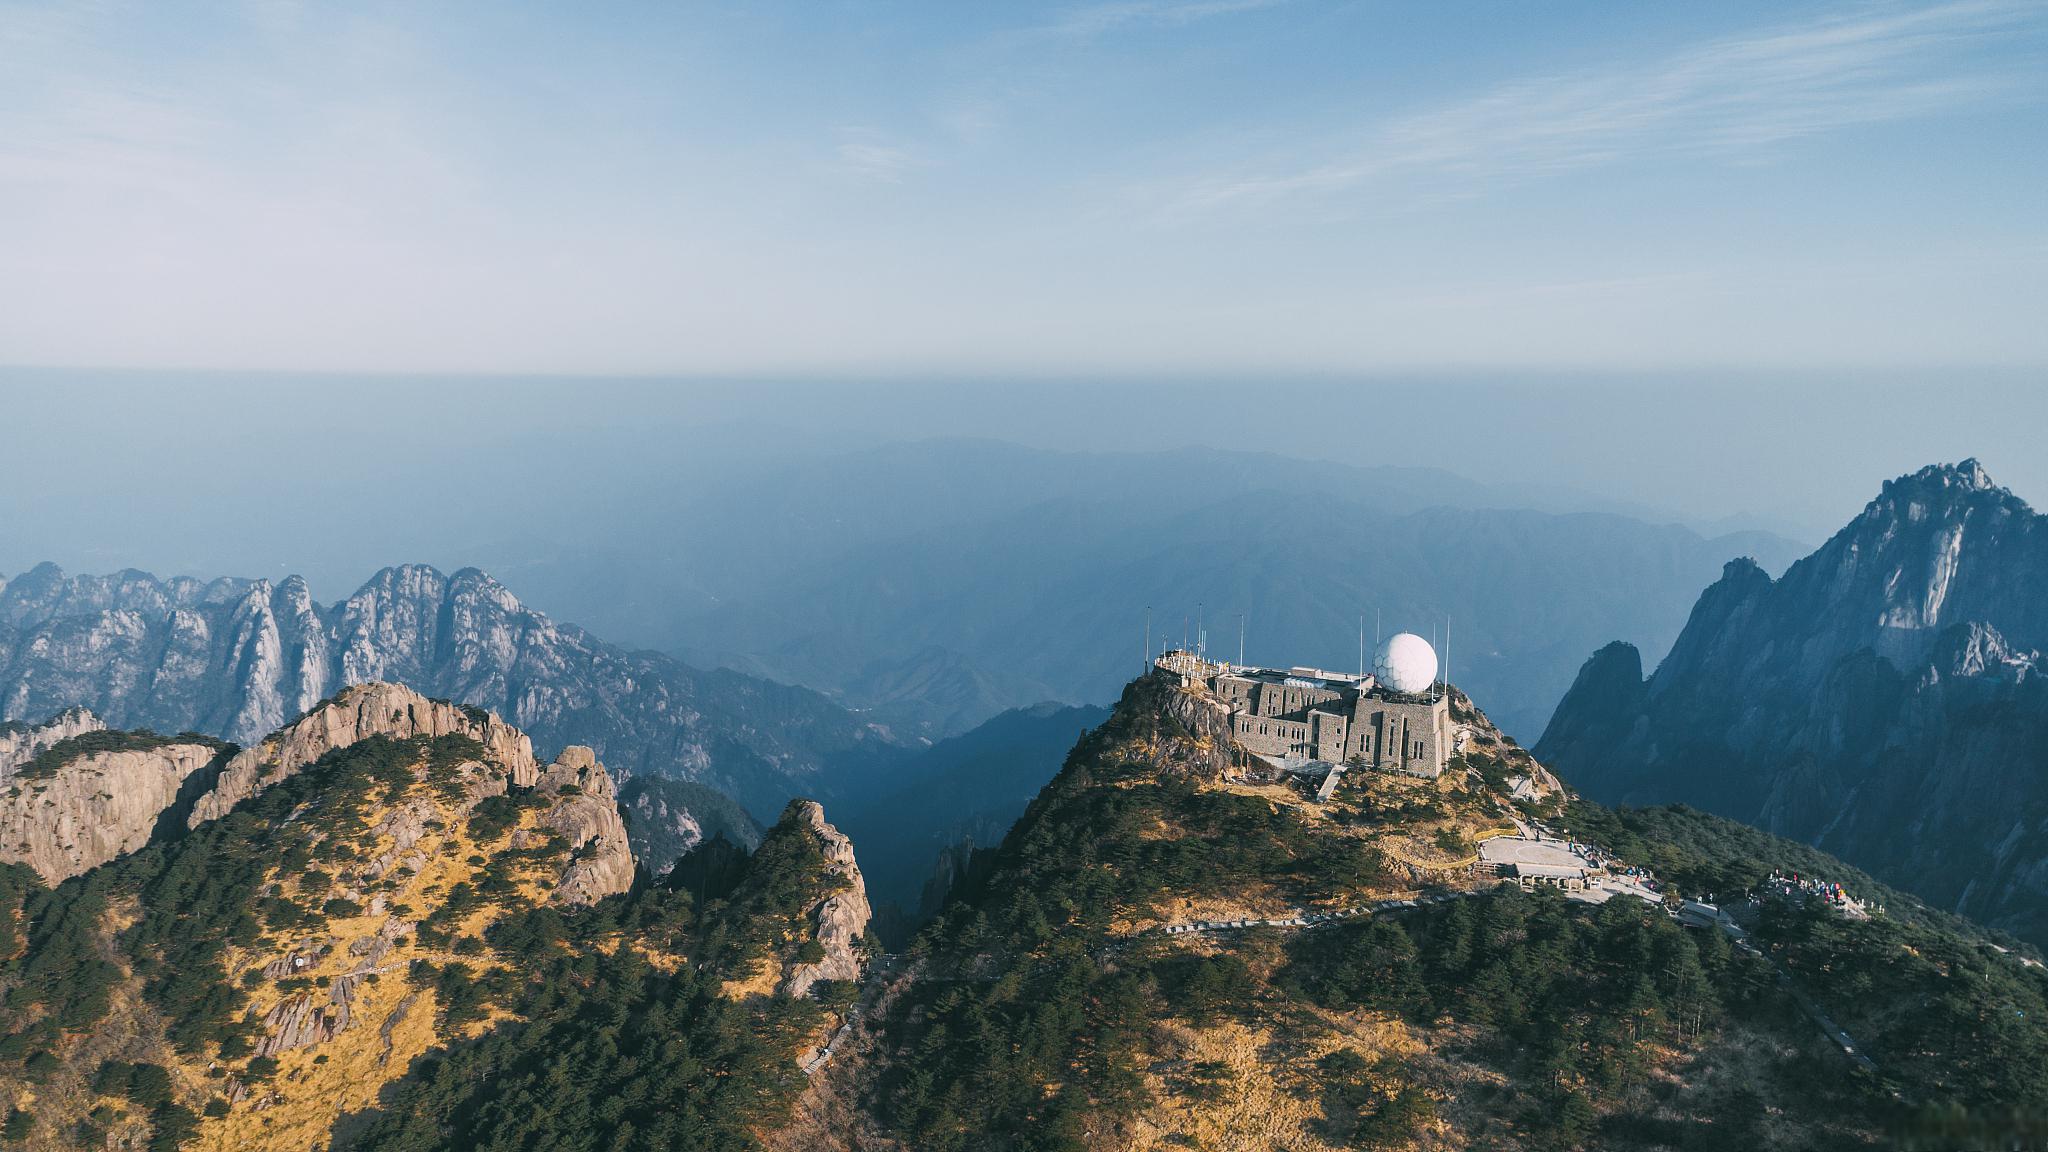 华中第一峰·神农顶 在中国的华中地区,有一座山峰以其雄伟壮丽的景色